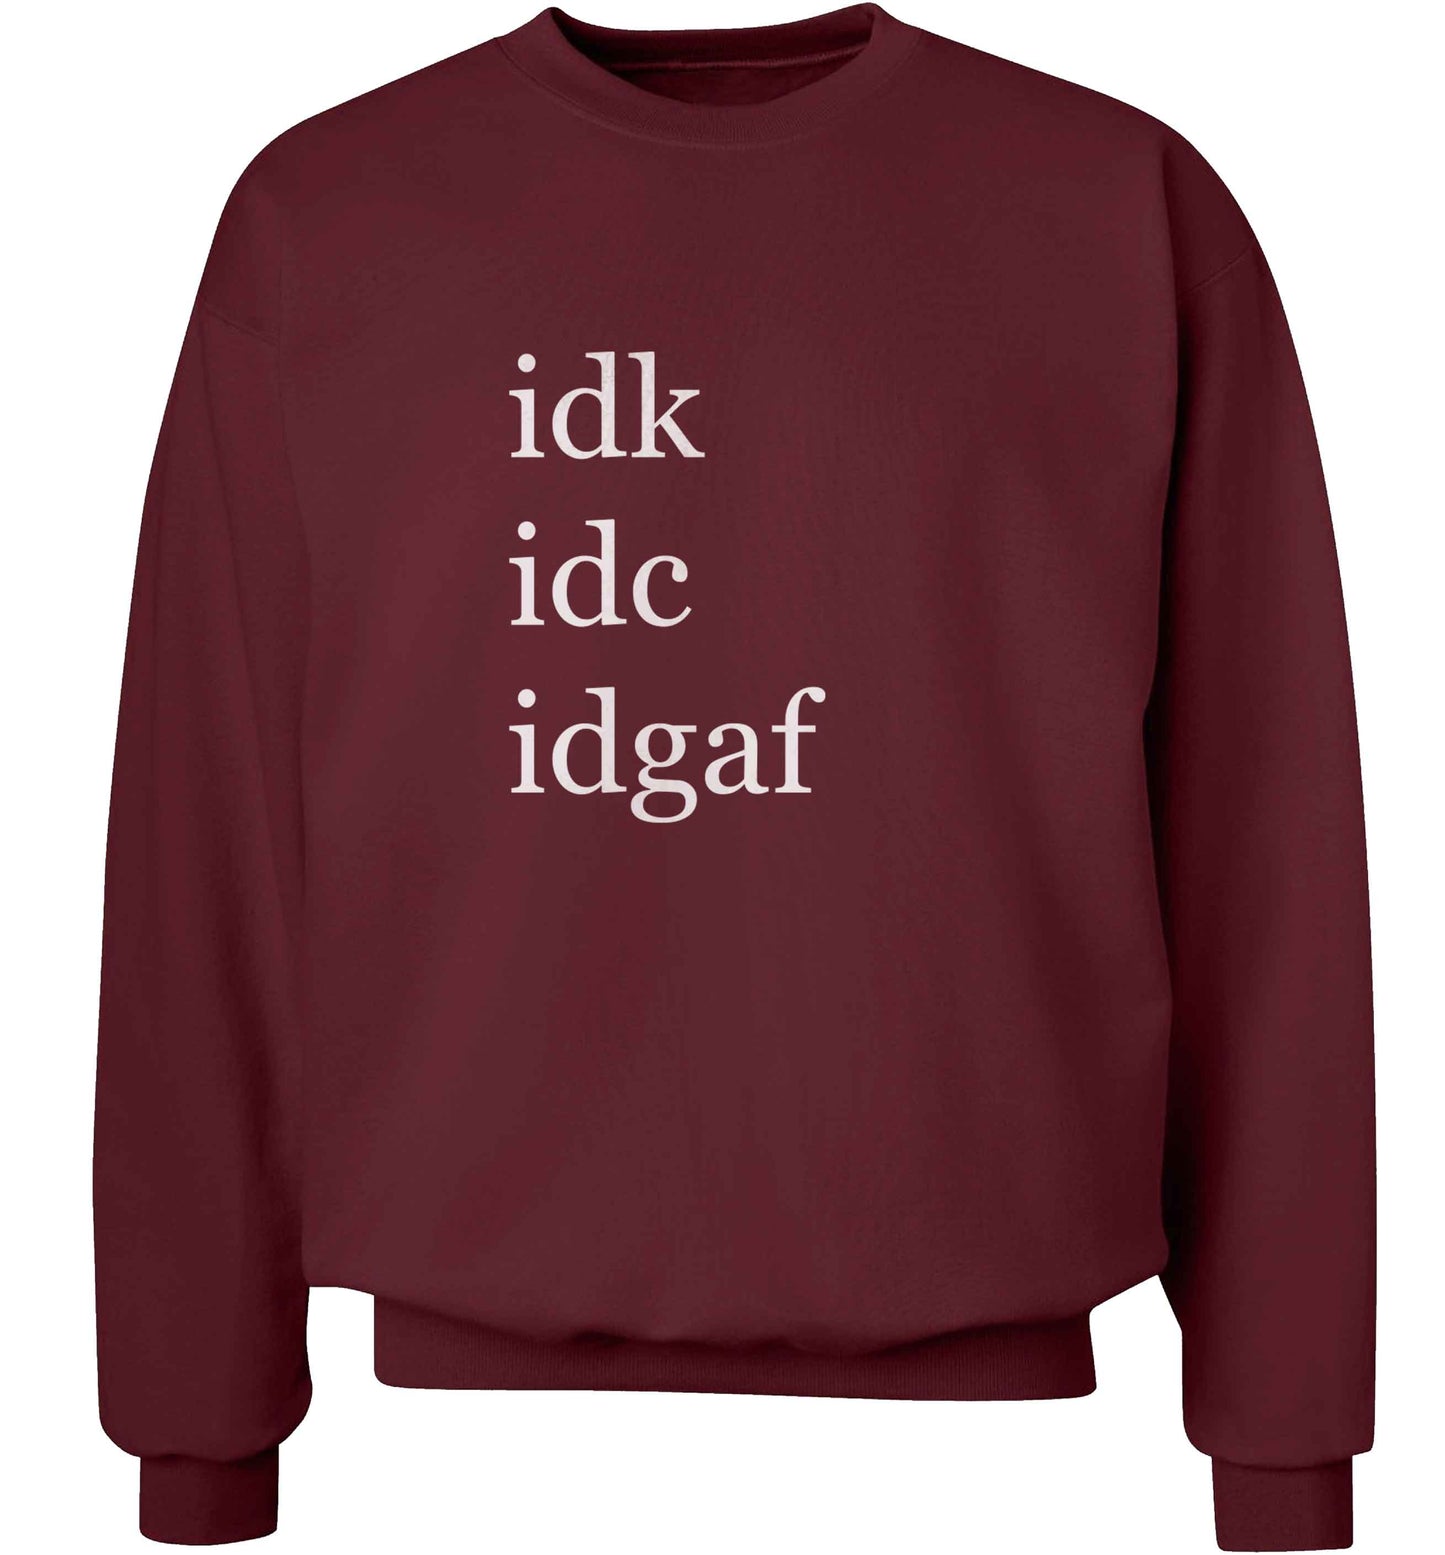 Idk Idc Idgaf adult's unisex maroon sweater 2XL